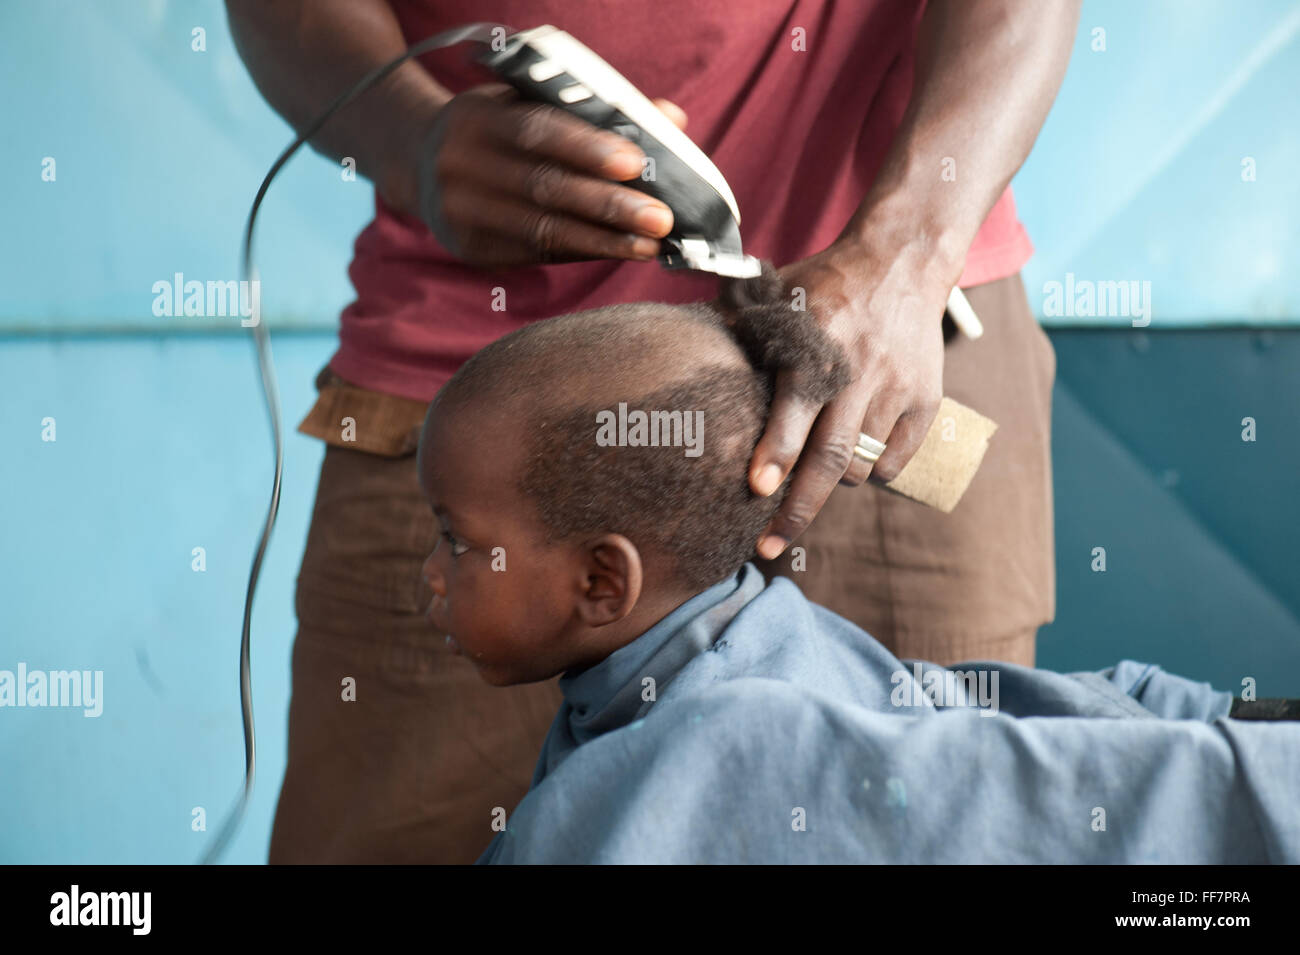 Mali, Afrika - Portrait von schwarze Kind in sein Haar in Afrika getan Stockfoto